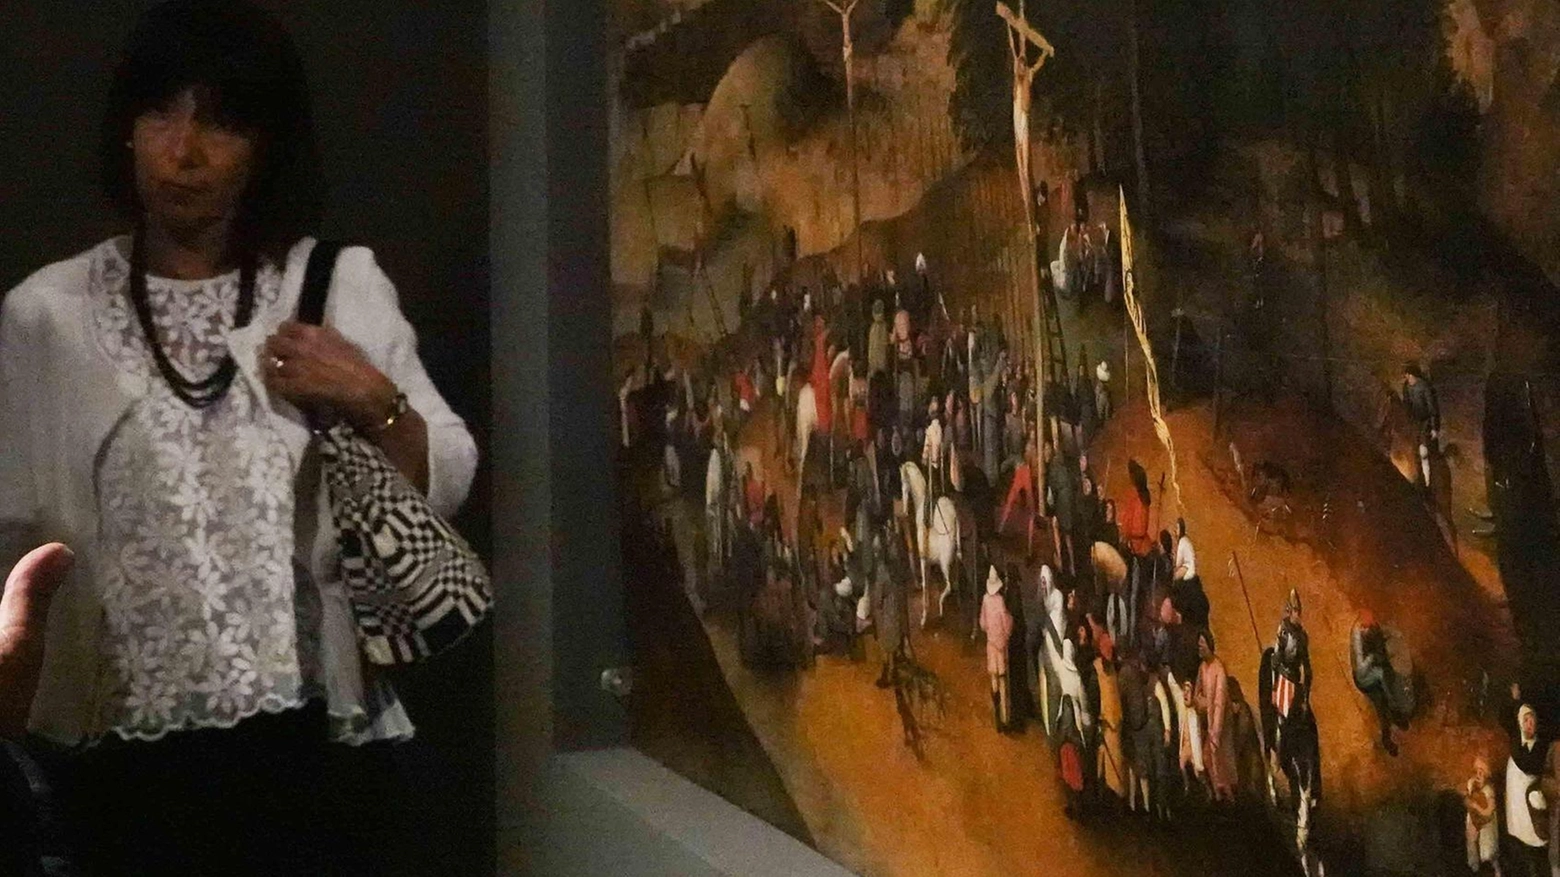 La Crocefissione di Pieter Brueghel il giovane sarà esposta al Museo diocesano di Sarzana dopo il trasferimento dal Museo Lia della Spezia. Visite guidate disponibili venerdì e sabato, apertura straordinaria per Pasqua e Pasquetta su prenotazione. Opere di sorveglianza in attesa.